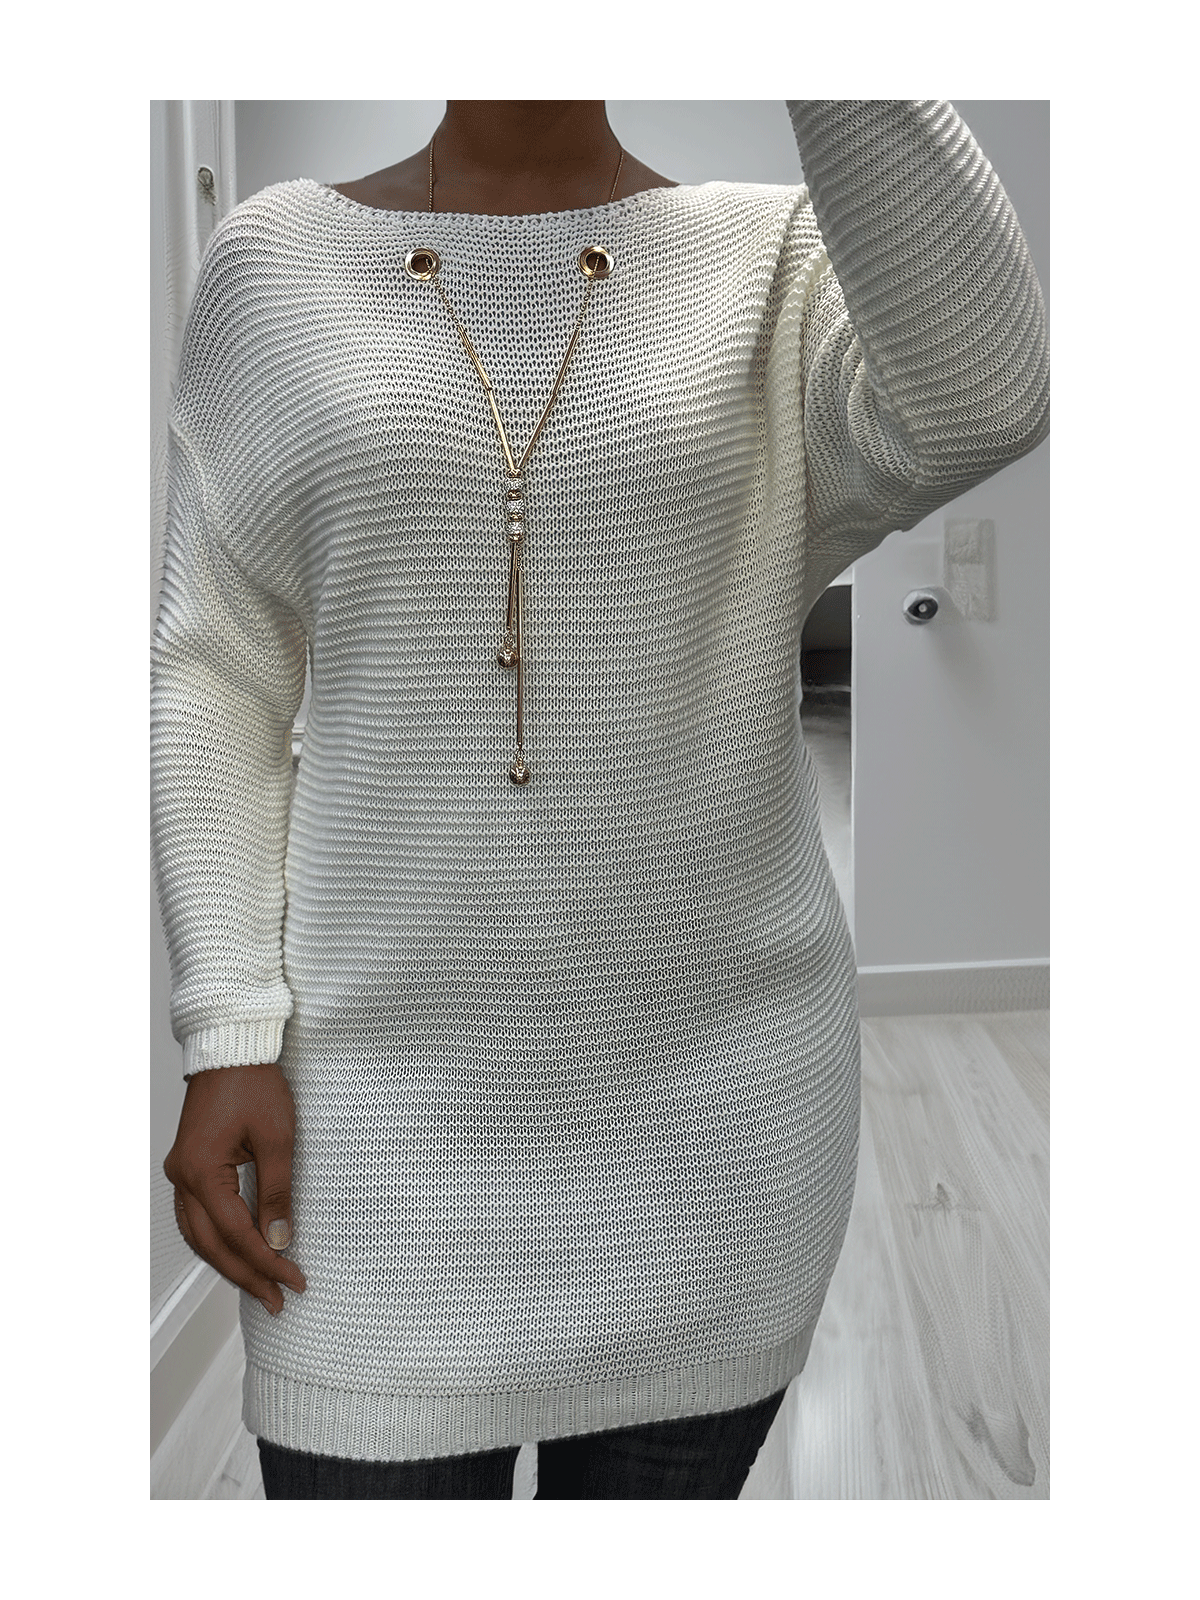 Tunique blanc en tricot avec accessoires - 1